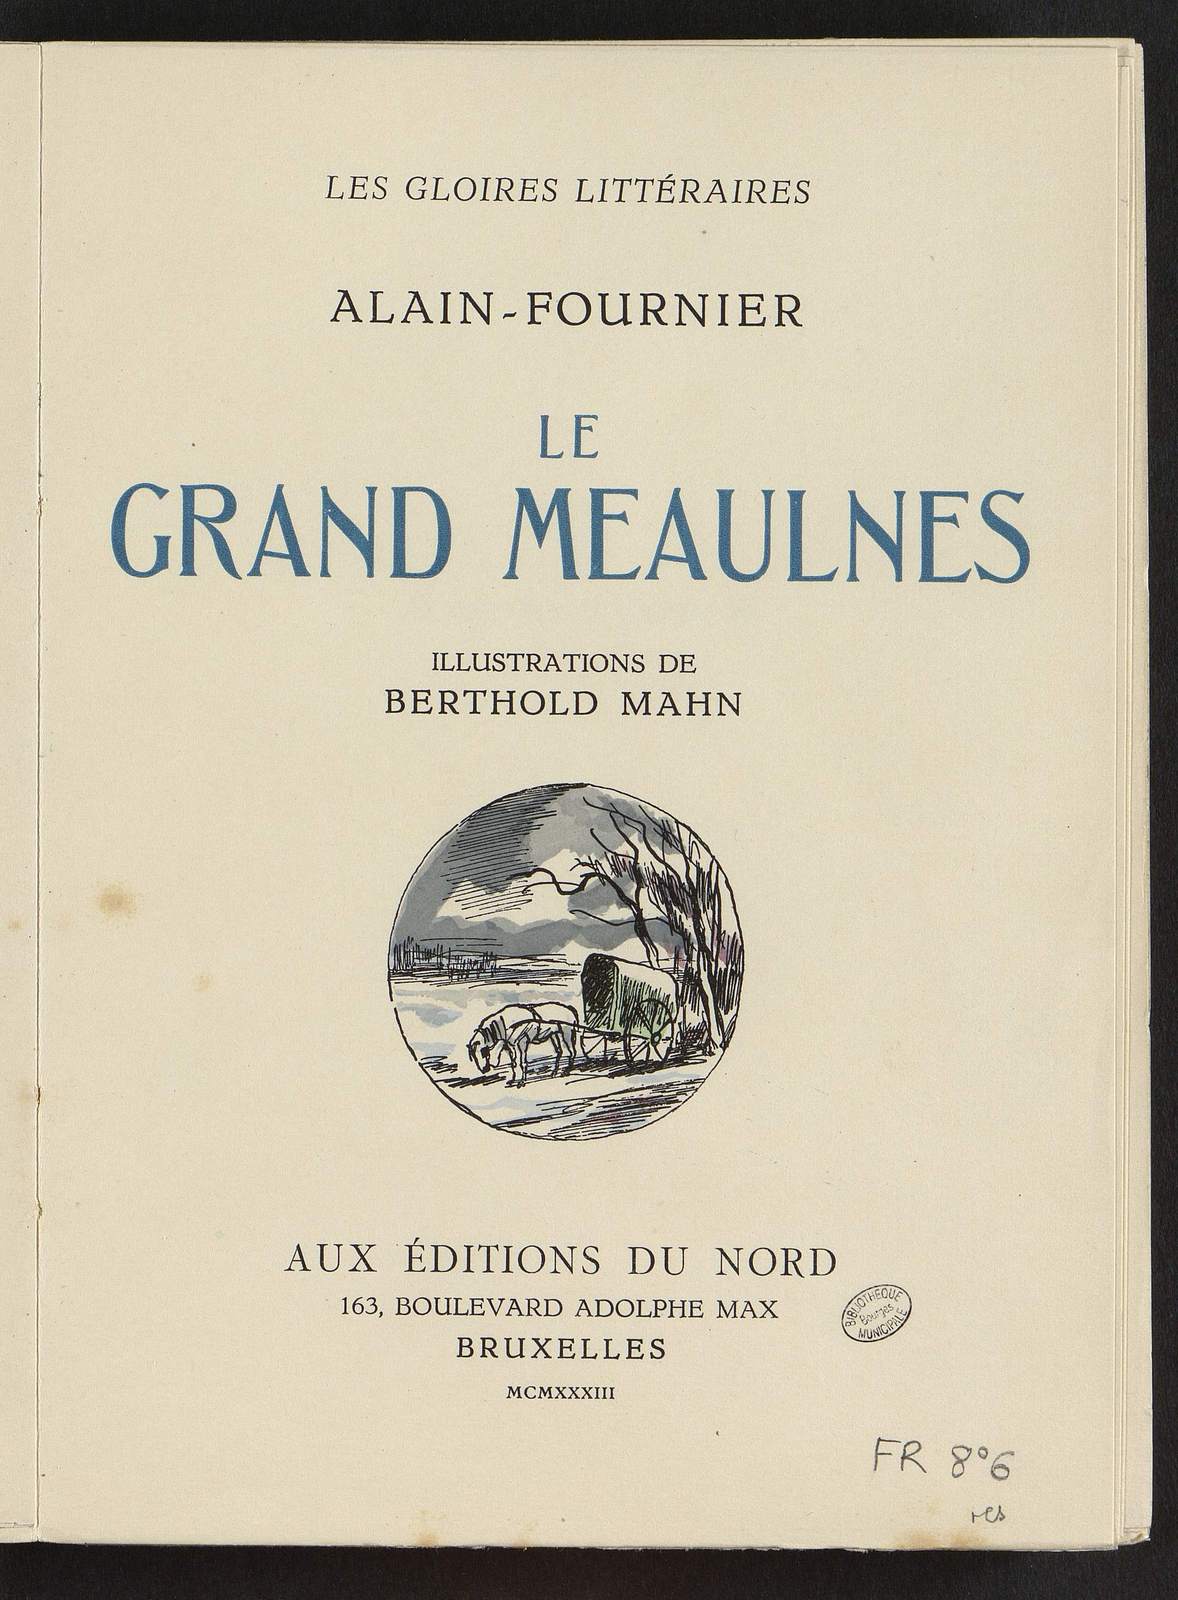 Le Grand Meaulnes, Le pensionnaire, illustré par Berthold Mahn, Editions du Nord, 1933